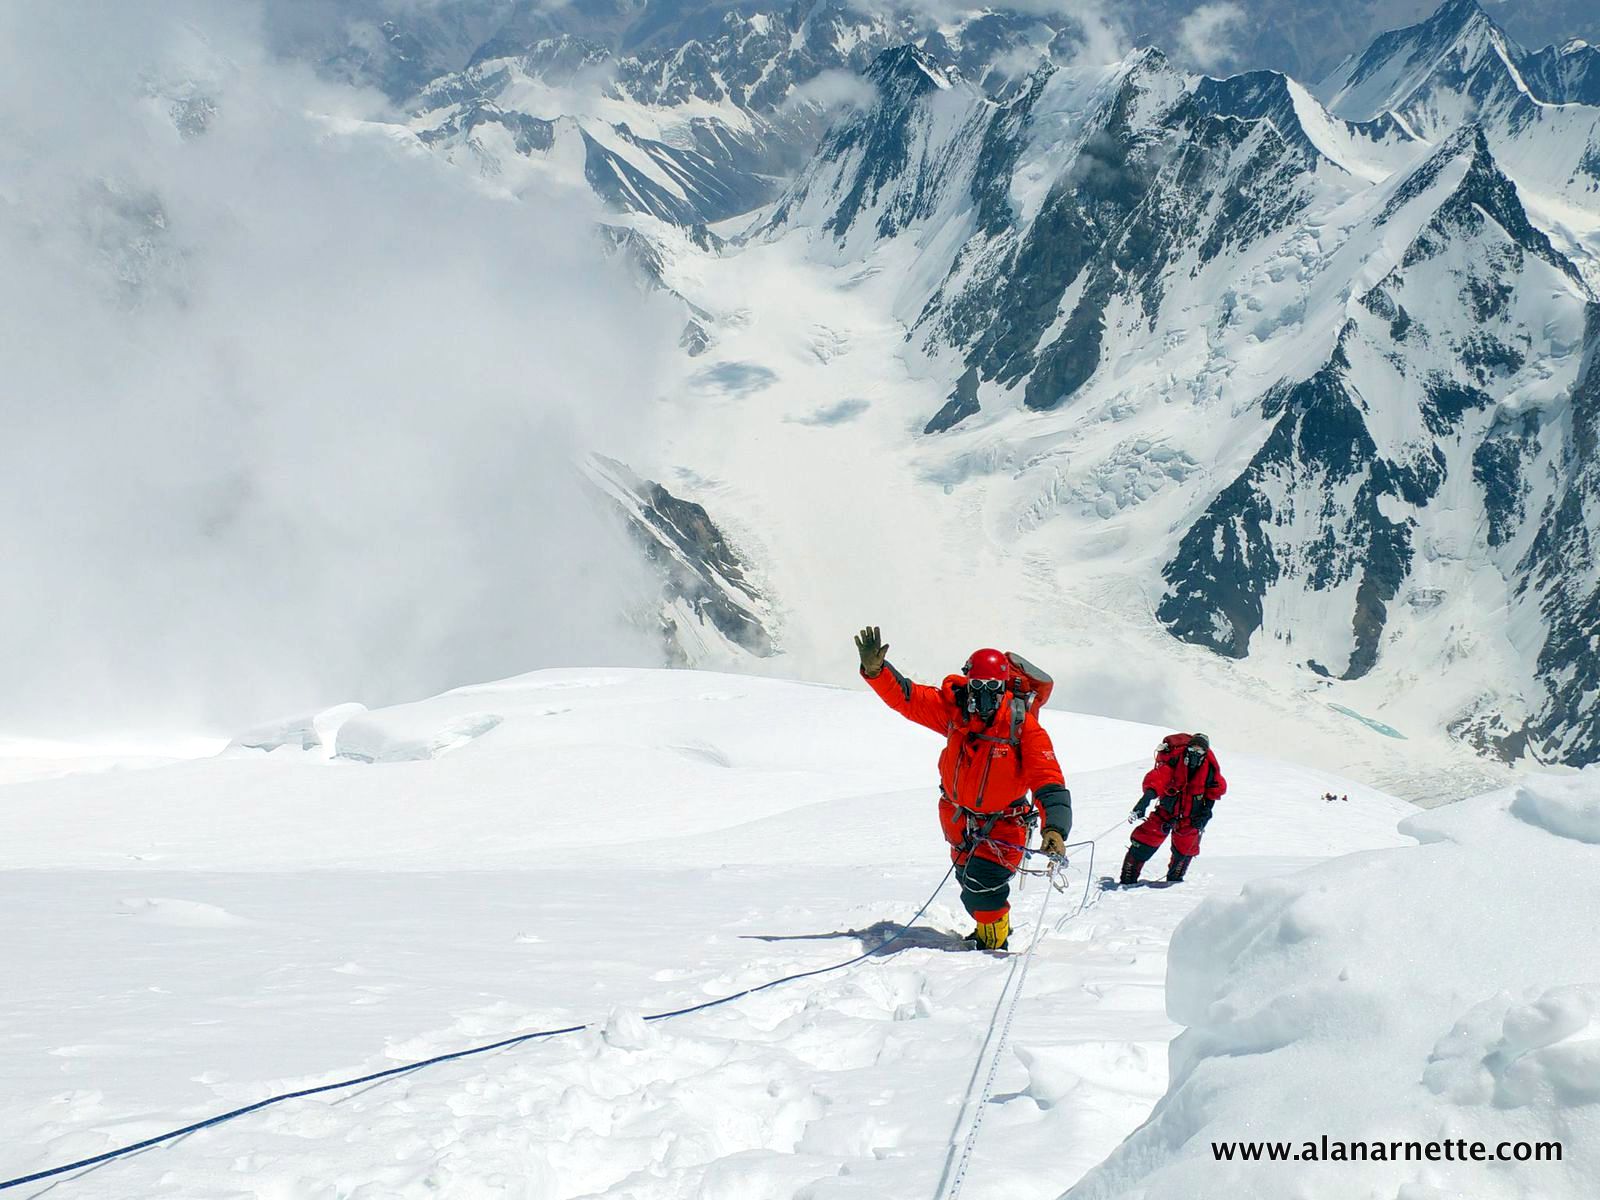 Alan approaching K2 summit